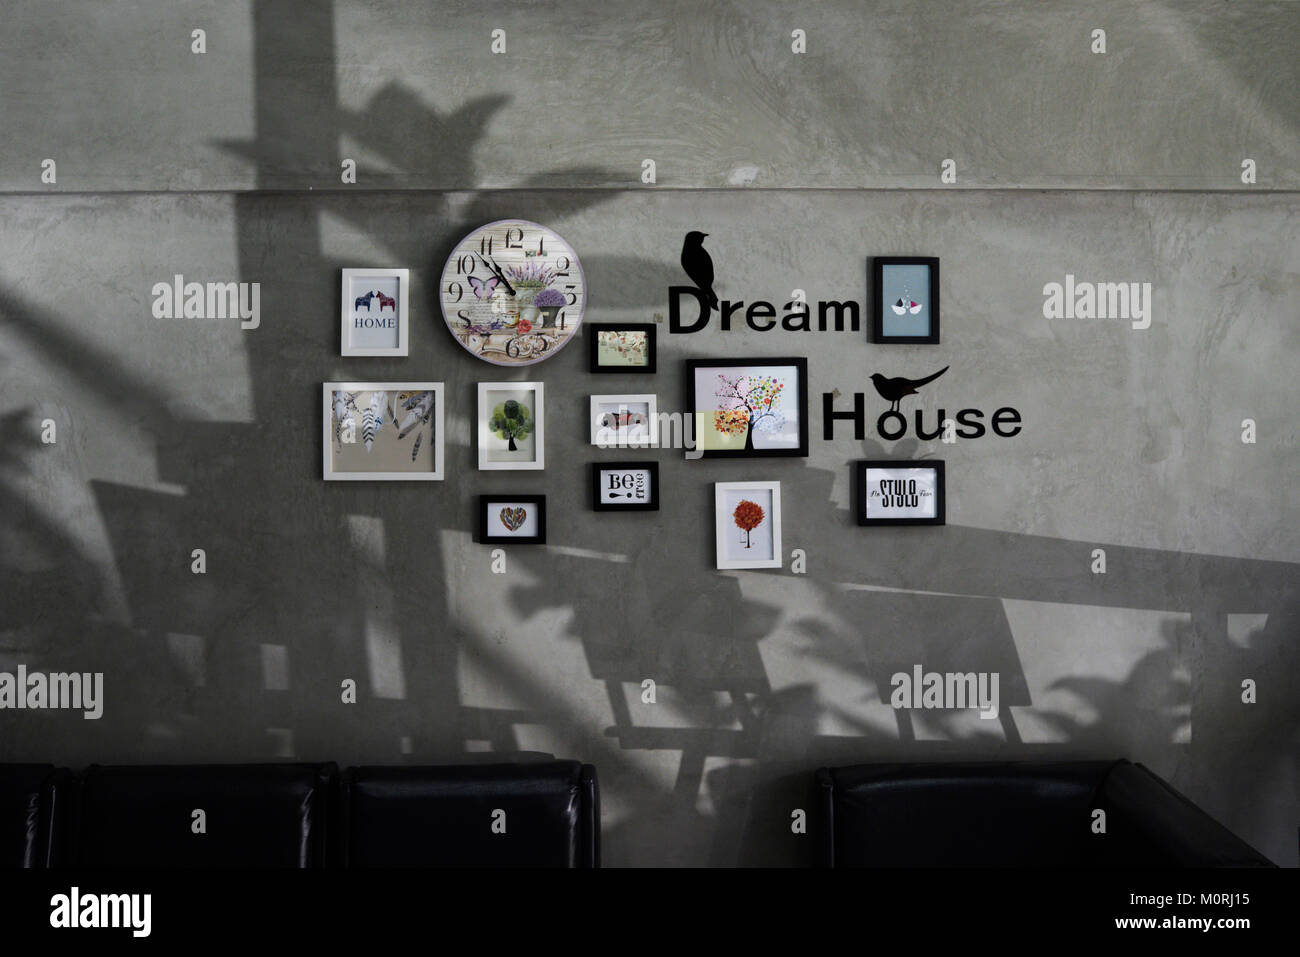 Home Decor Bilderrahmen mit Dream House Wort hängen auf eine graue Wand. Stockfoto